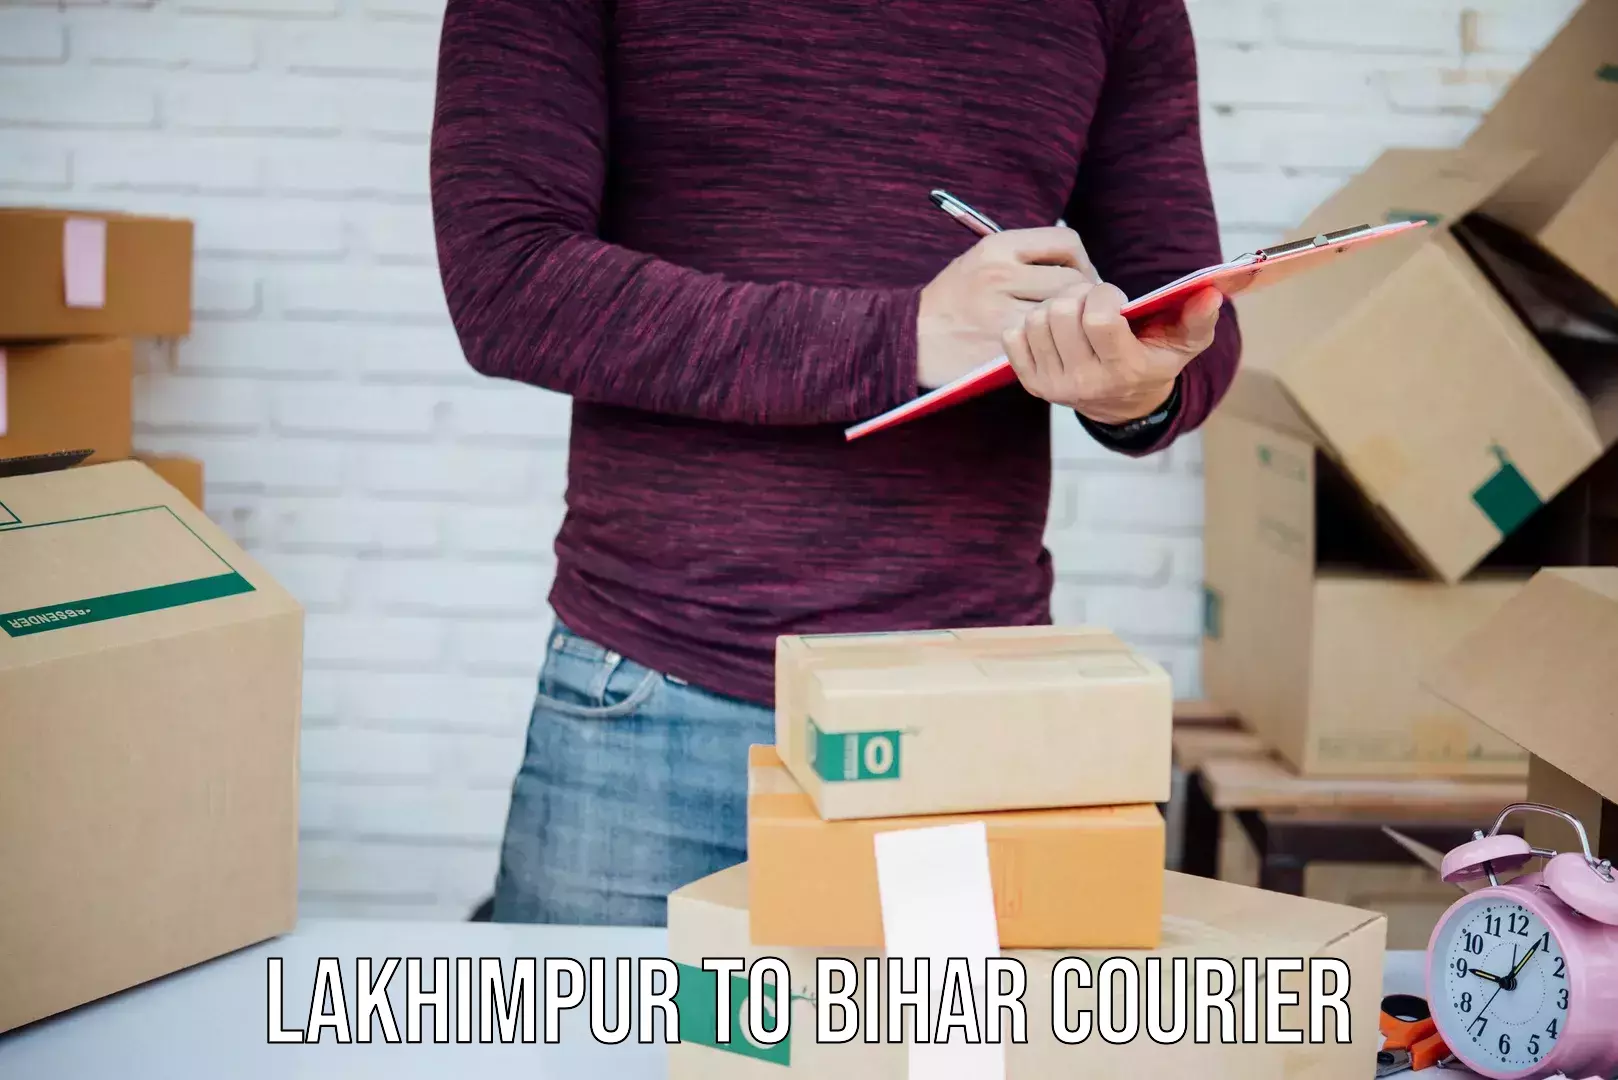 Express package handling Lakhimpur to Bihar